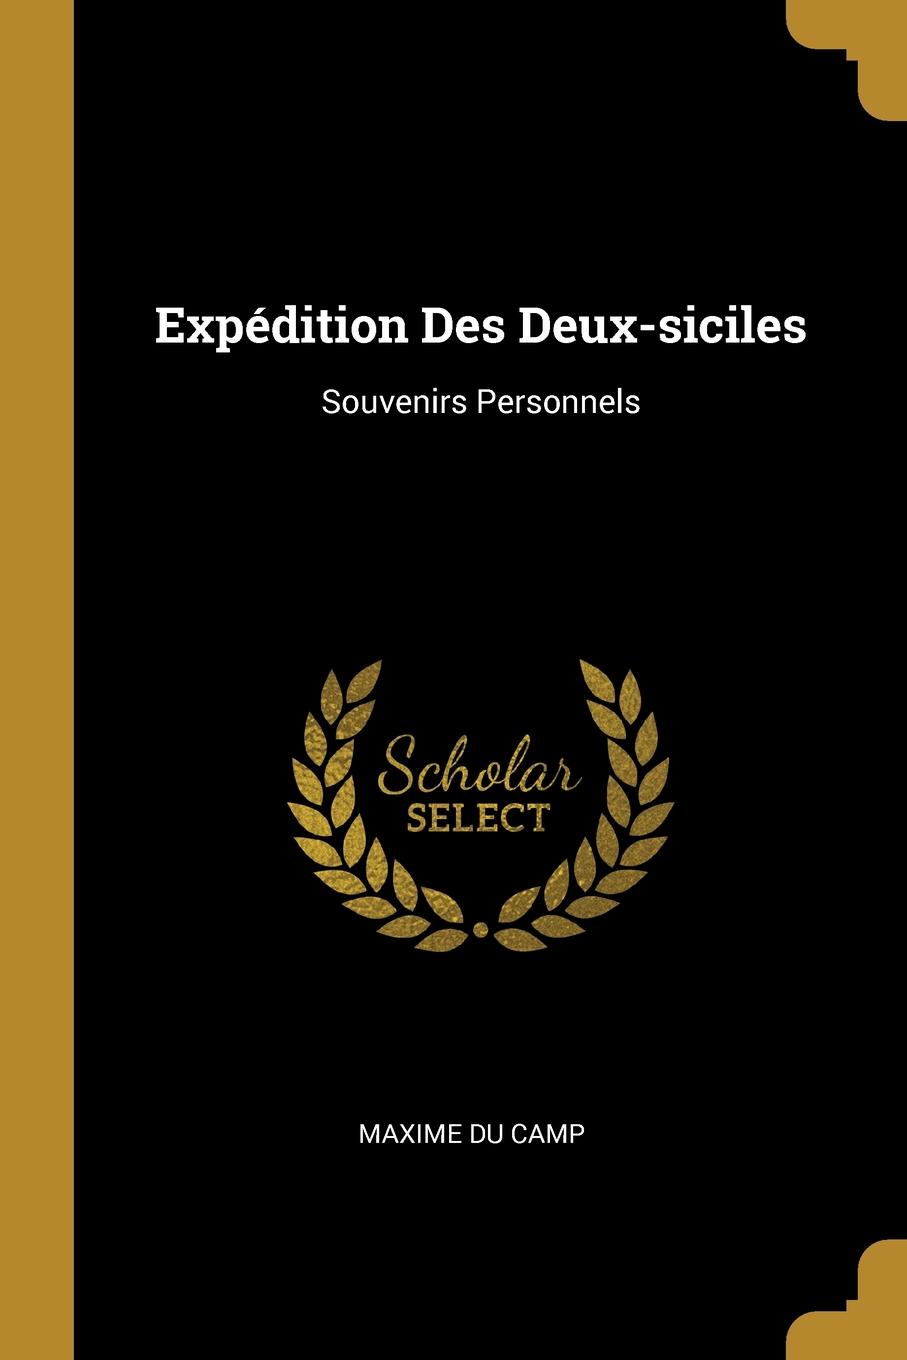 Expedition Des Deux-siciles. Souvenirs Personnels